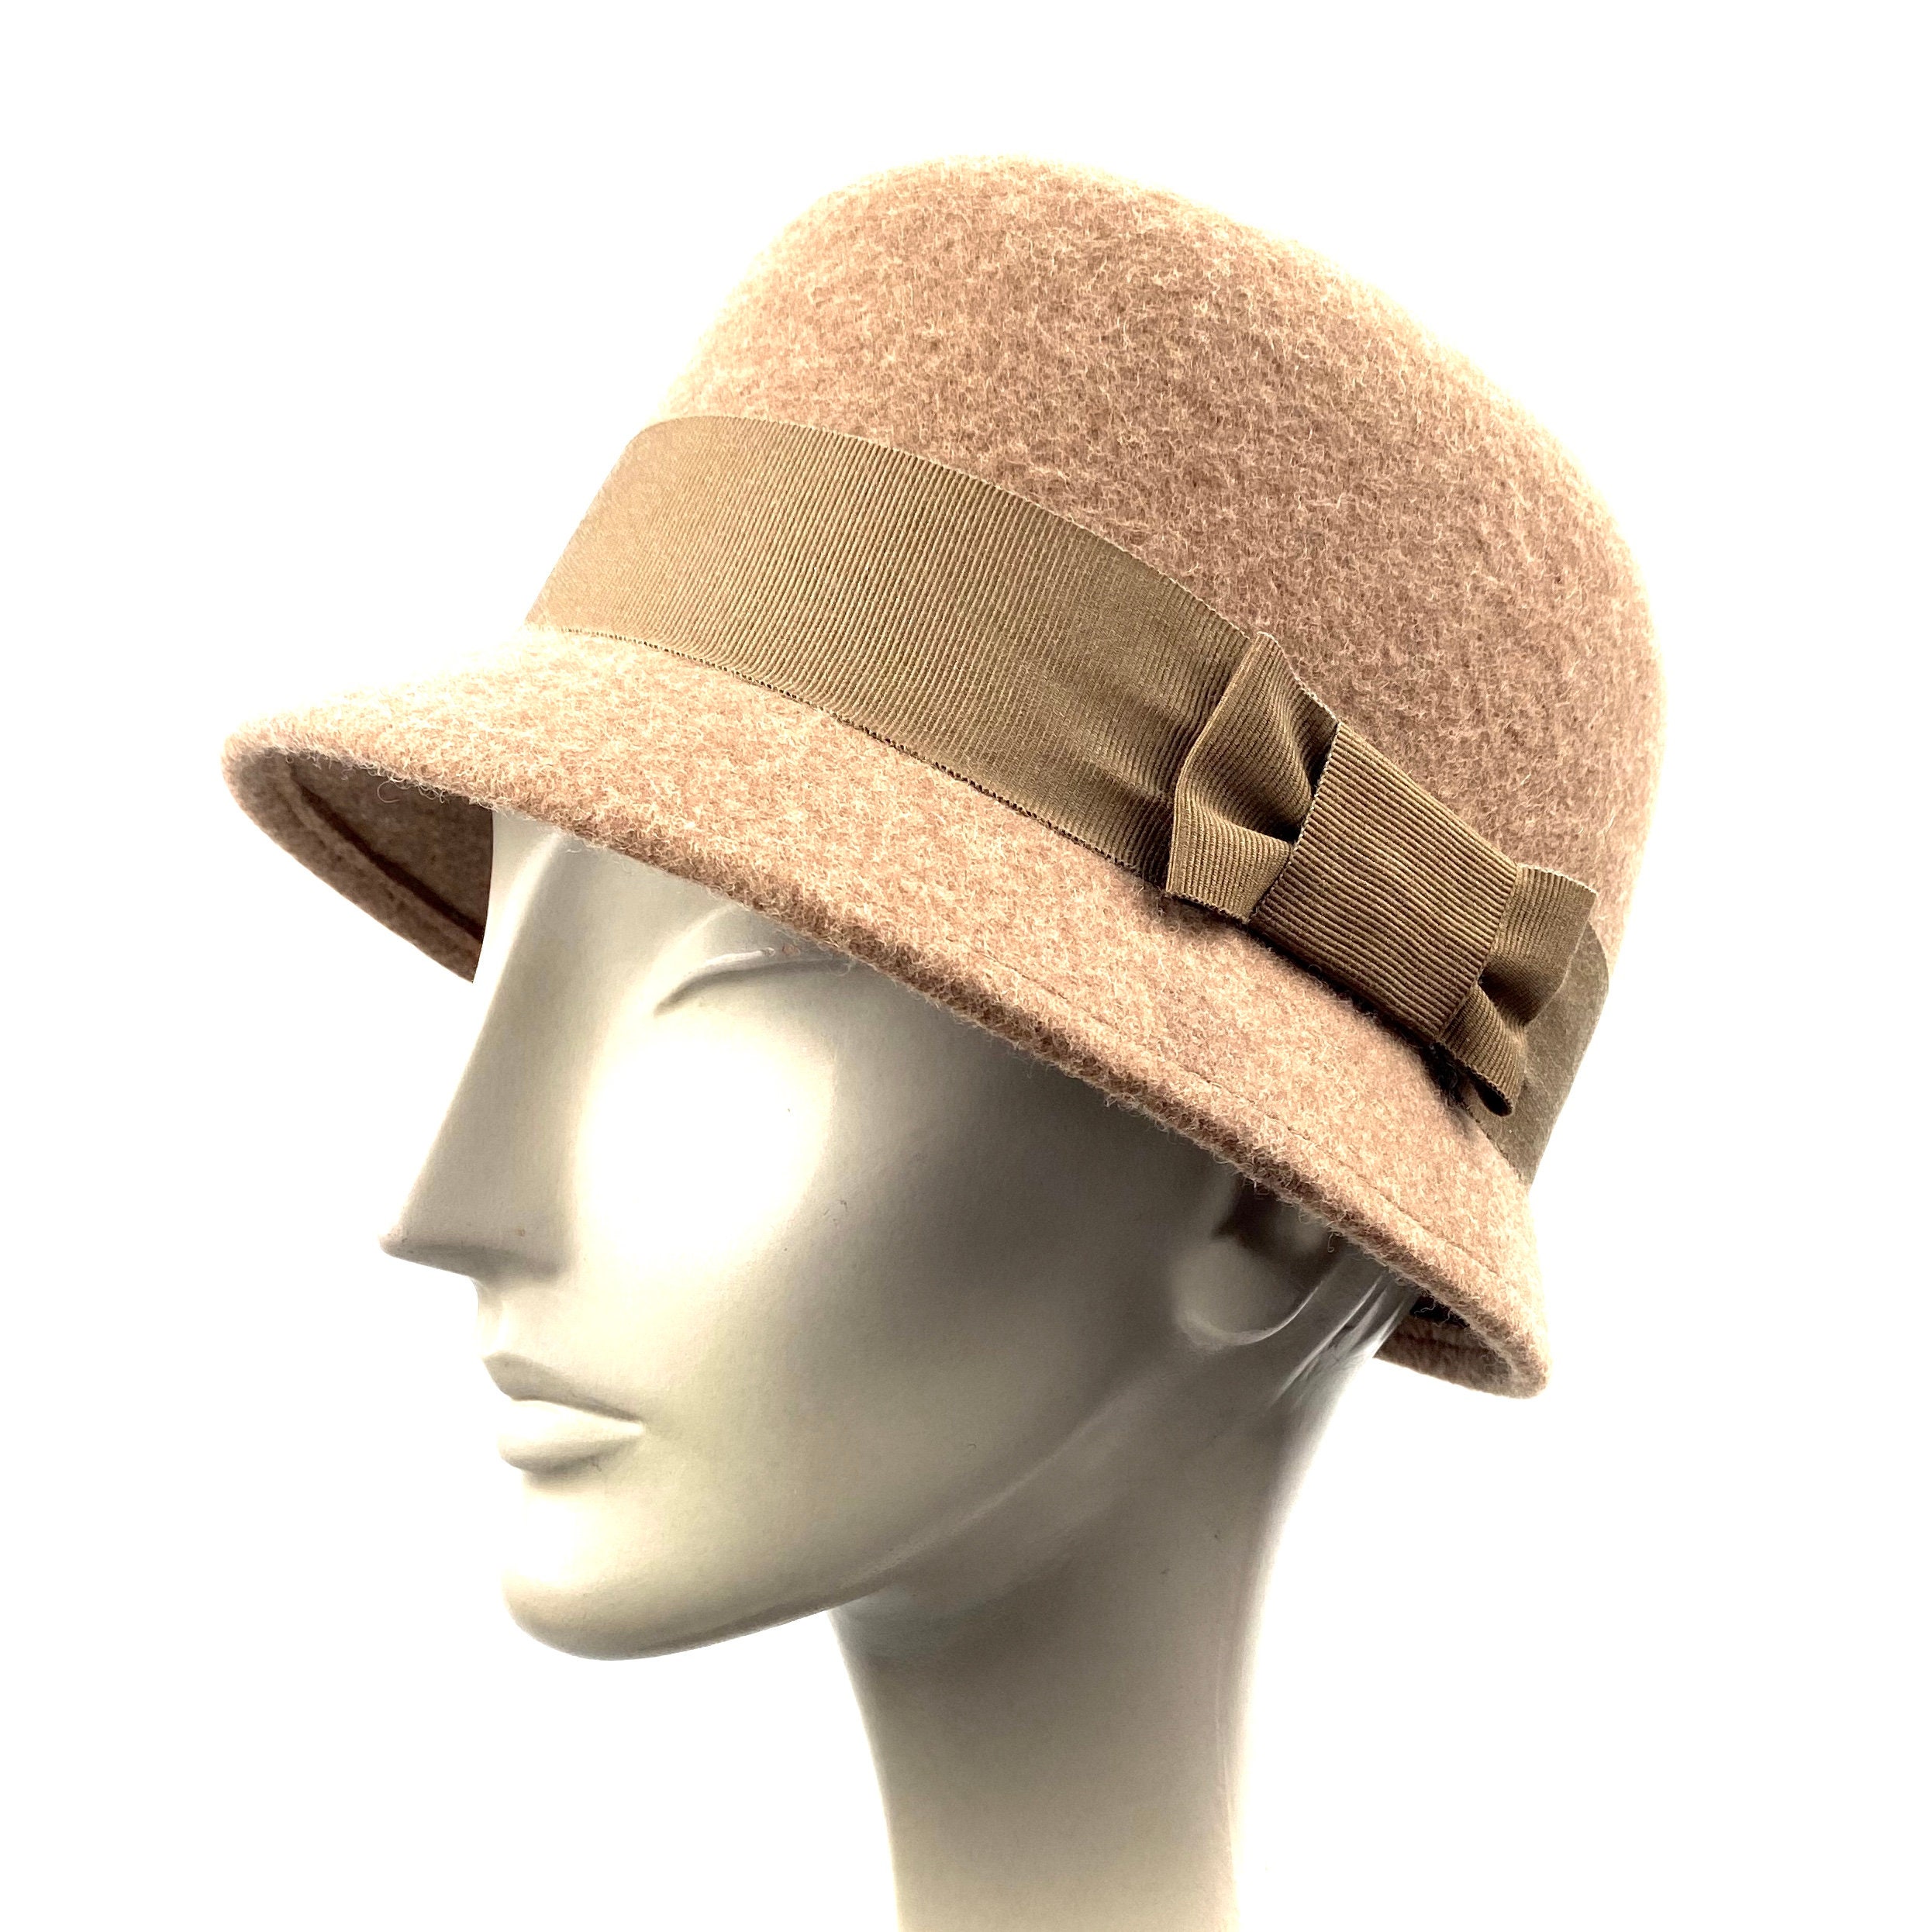 Felt Cloche Hat Woman Beige Felt Hat Beige Cloche Hat 1920s - Etsy